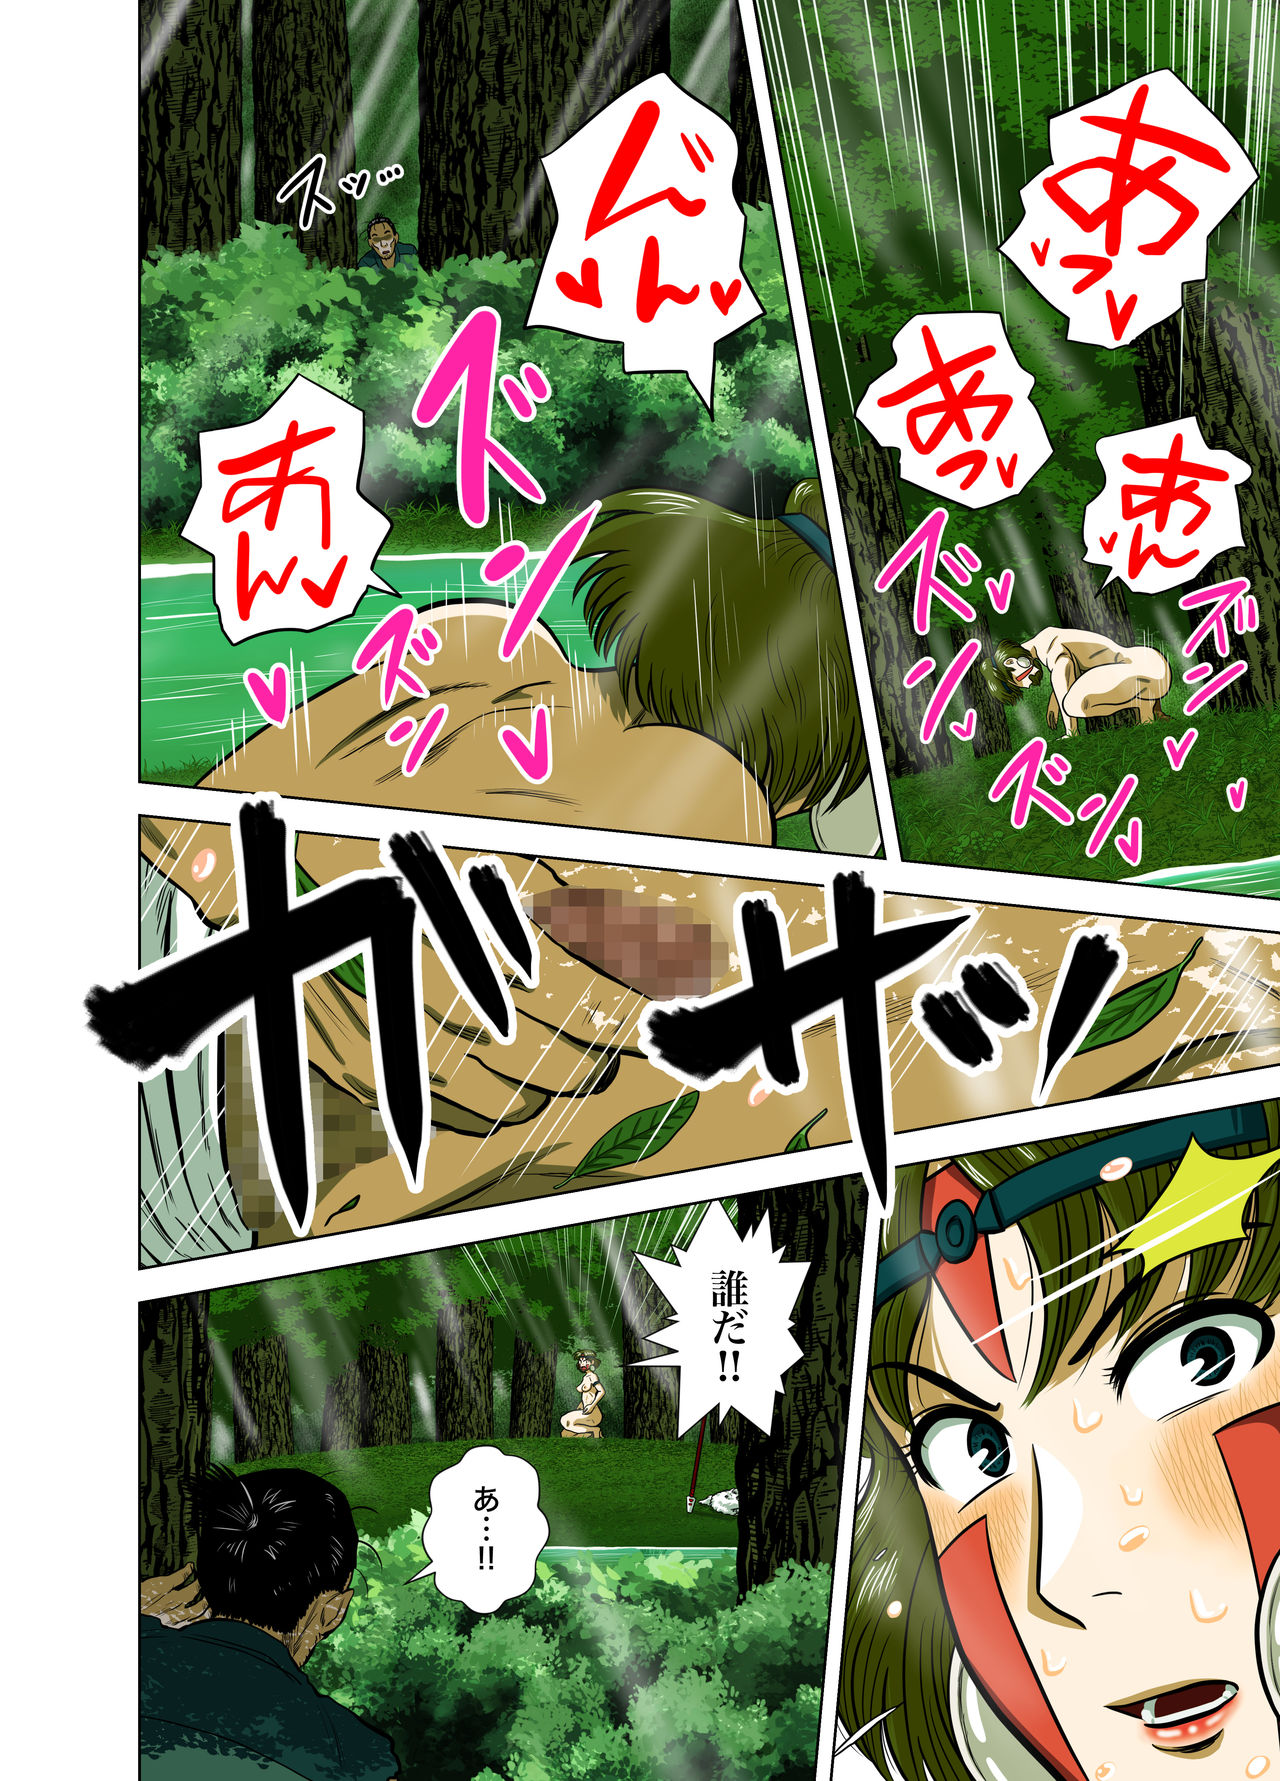 Full Colour Manga 16p - Page 9 - IMHentai